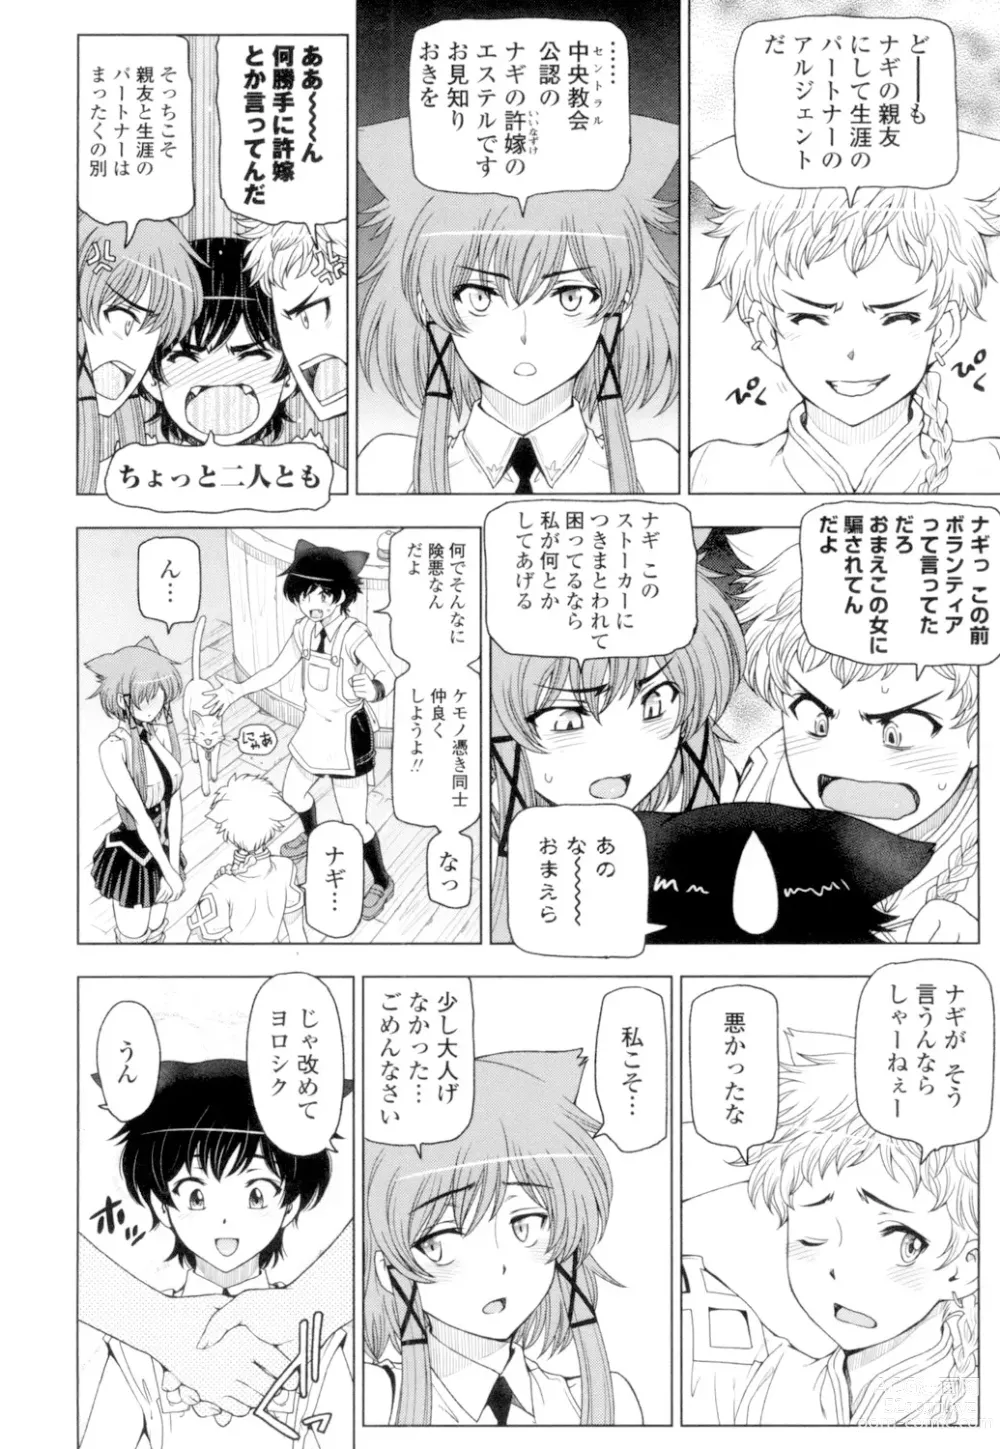 Page 208 of manga Natsu-jiru ~Ase ni Mamirete Gucchagucha~